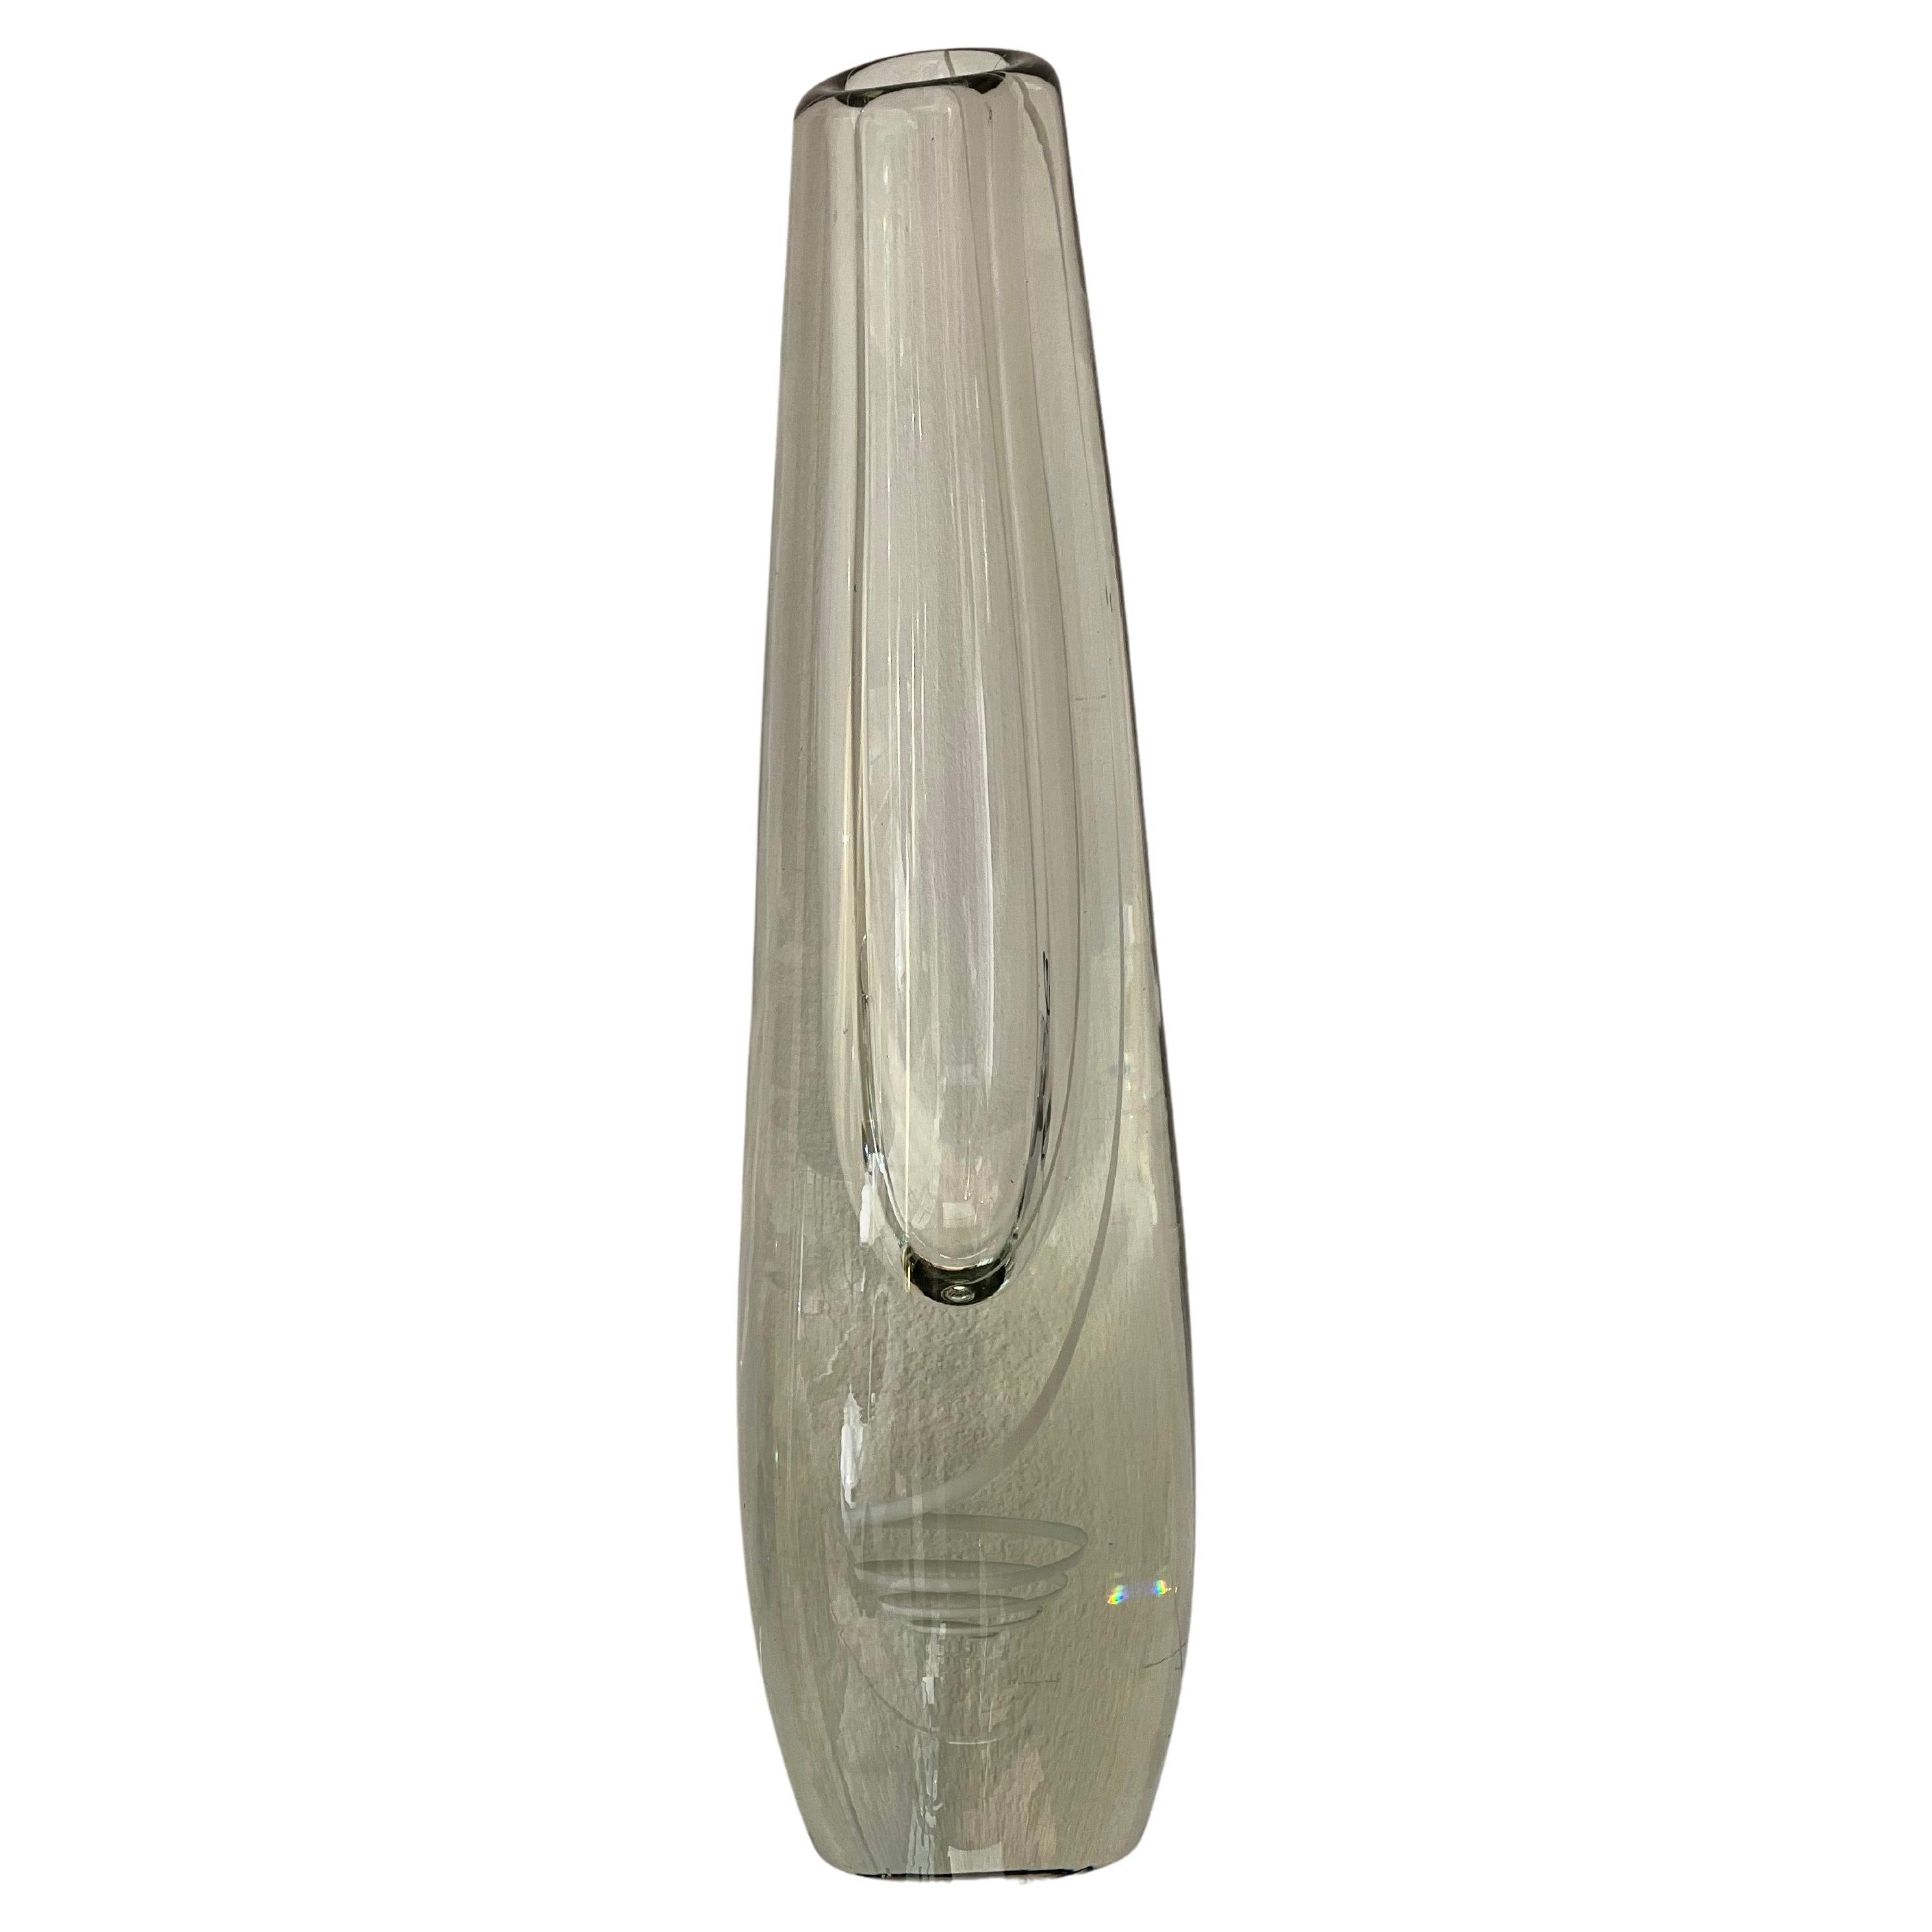 Gunnel Nyman - Nuutajärvi - "Serpentine" vase - 1957 For Sale